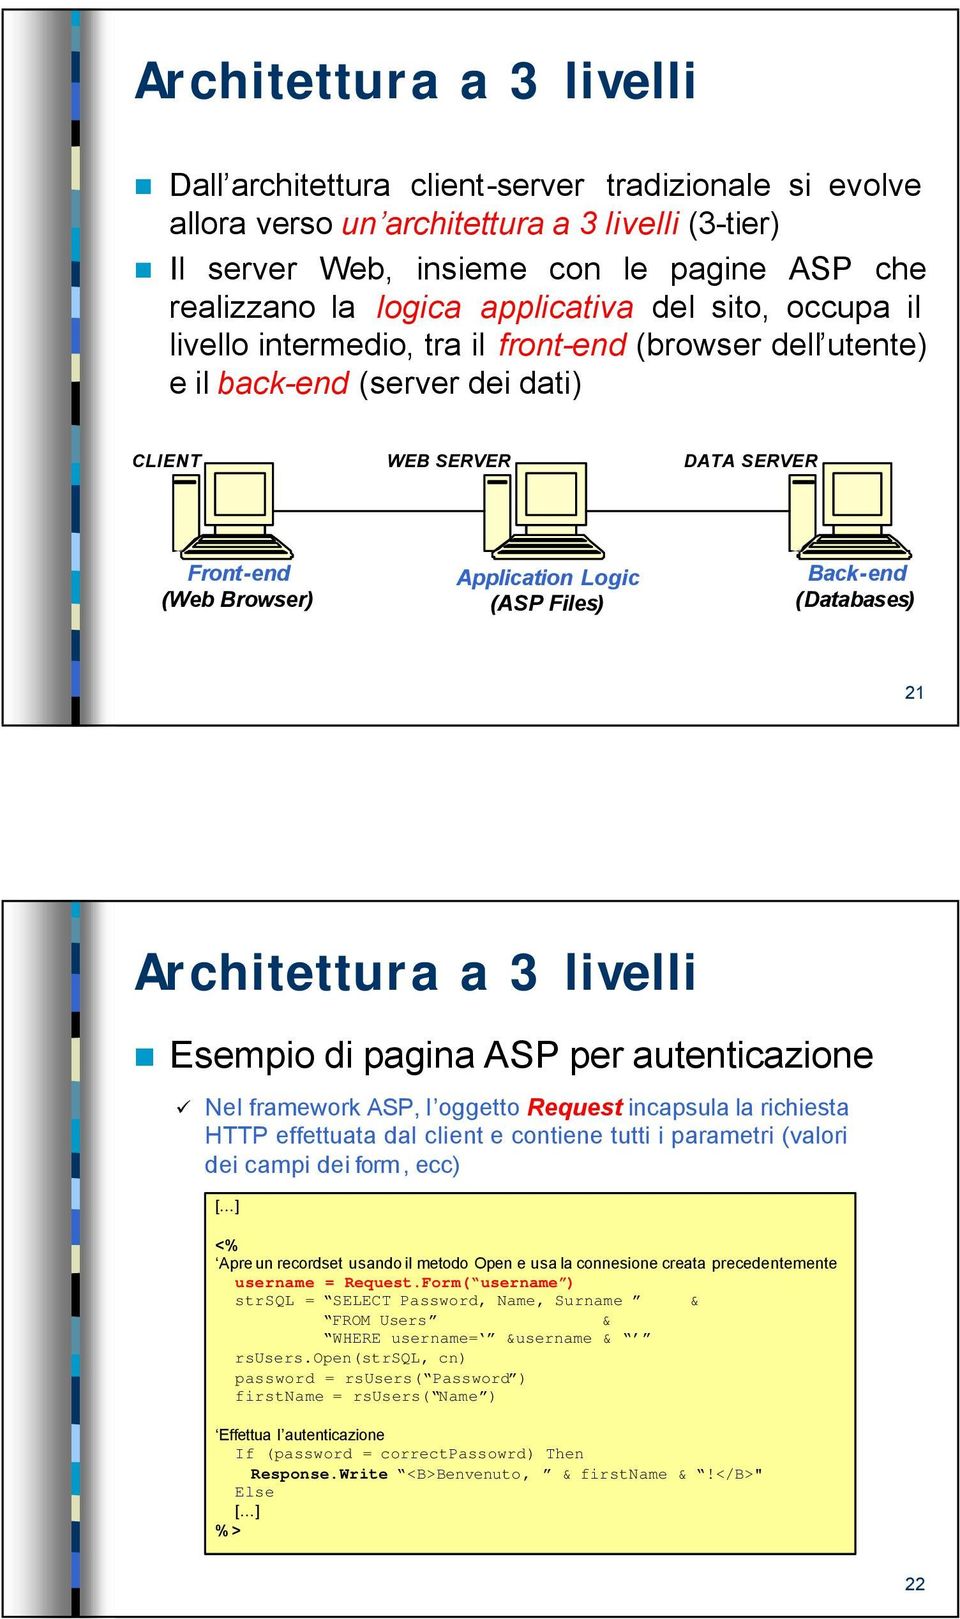 Files) Back-end (Databases) 21 Architettura a 3 livelli Esempio di pagina ASP per autenticazione Nel framework ASP, l oggetto Request incapsula la richiesta HTTP effettuata dal client e contiene